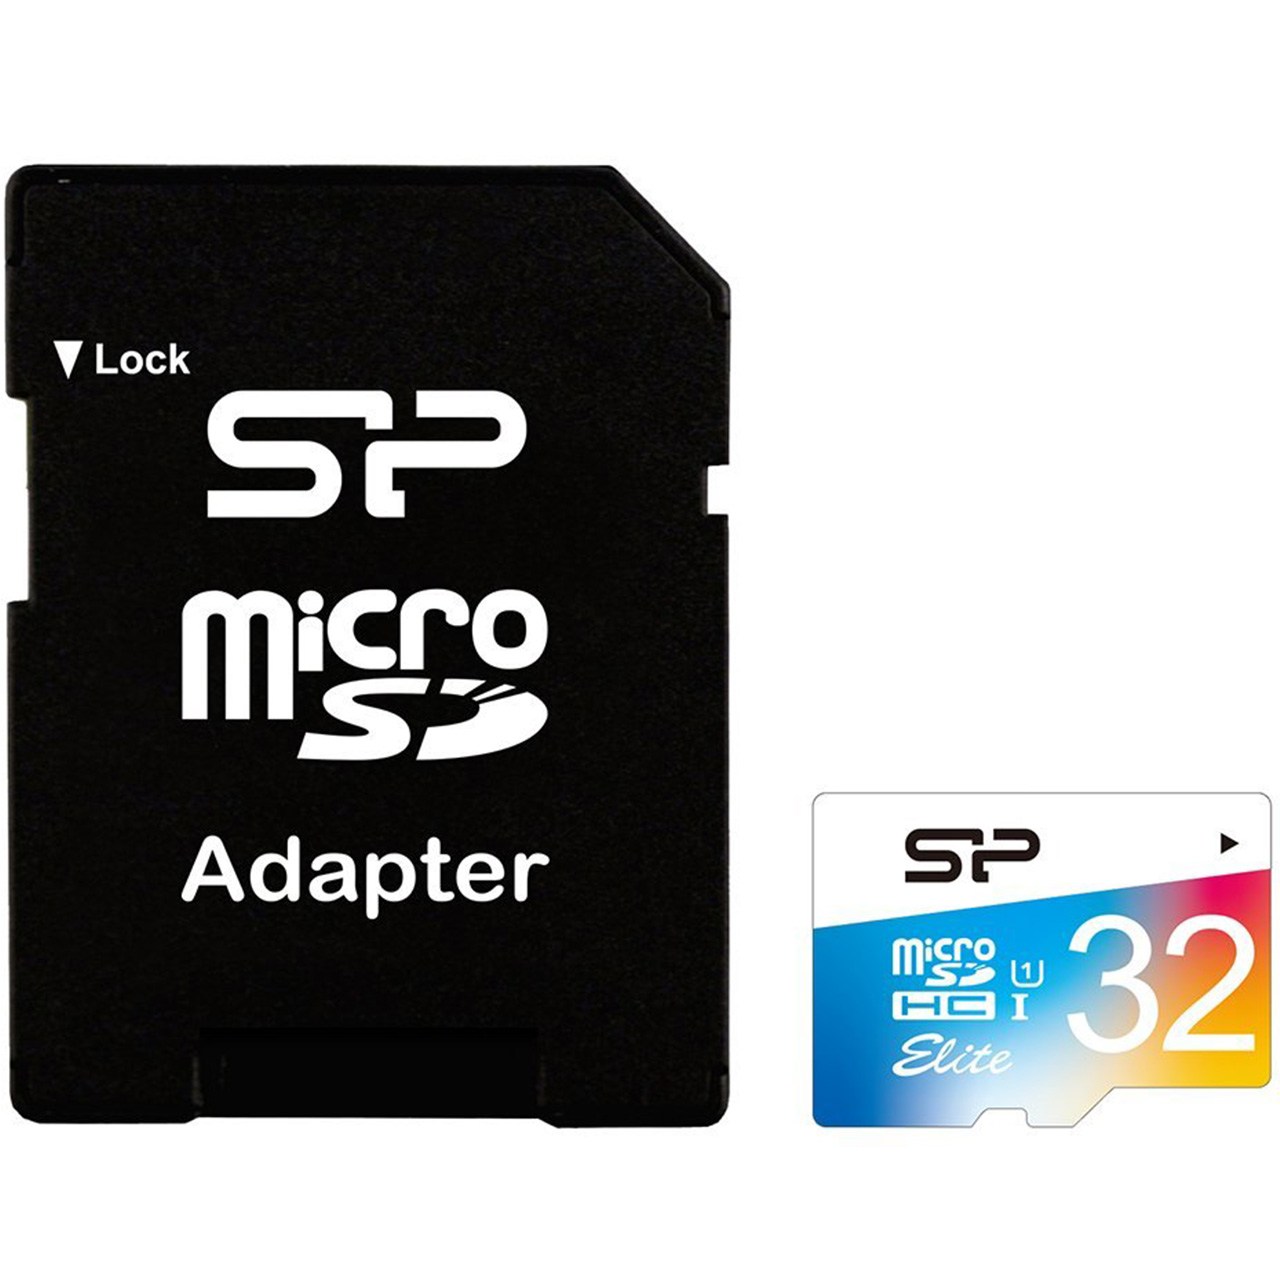 کارت حافظه microSDHC سیلیکون پاور مدل Color Elite کلاس 10 استاندارد UHS-I U1 سرعت 85MBps همراه با آداپتور SD ظرفیت 32 گیگابایت